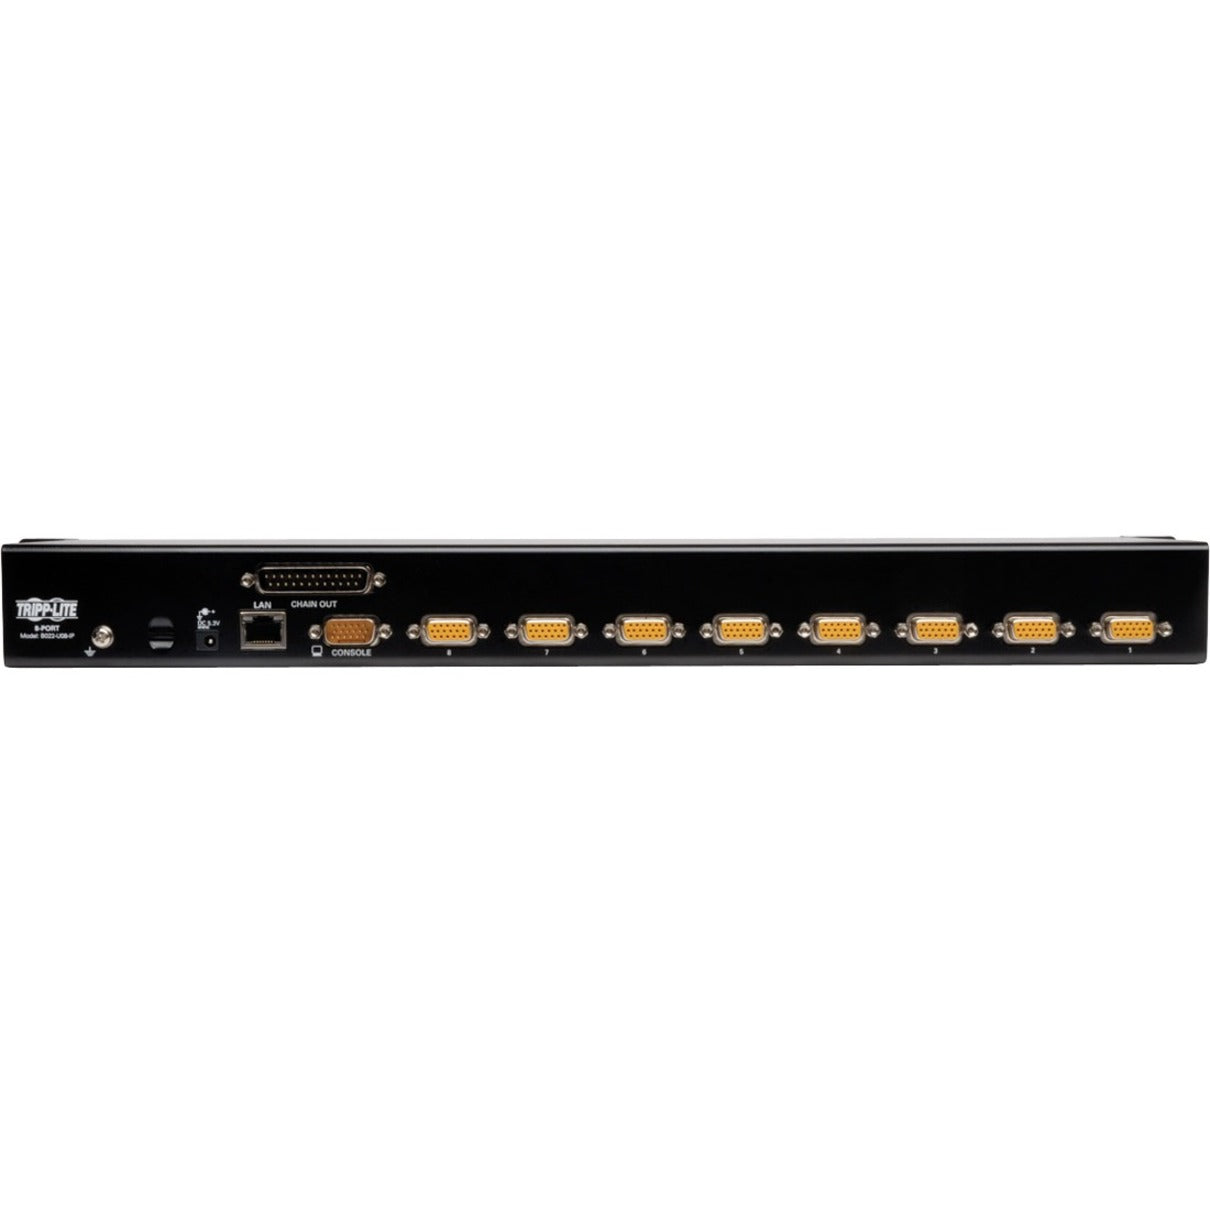 Tripp Lite B022-U08-IP NetDirector 1U Rackmount IP KVM Switch, 8-Port, QXGA, 2048 x 1536, 3 Year Warranty